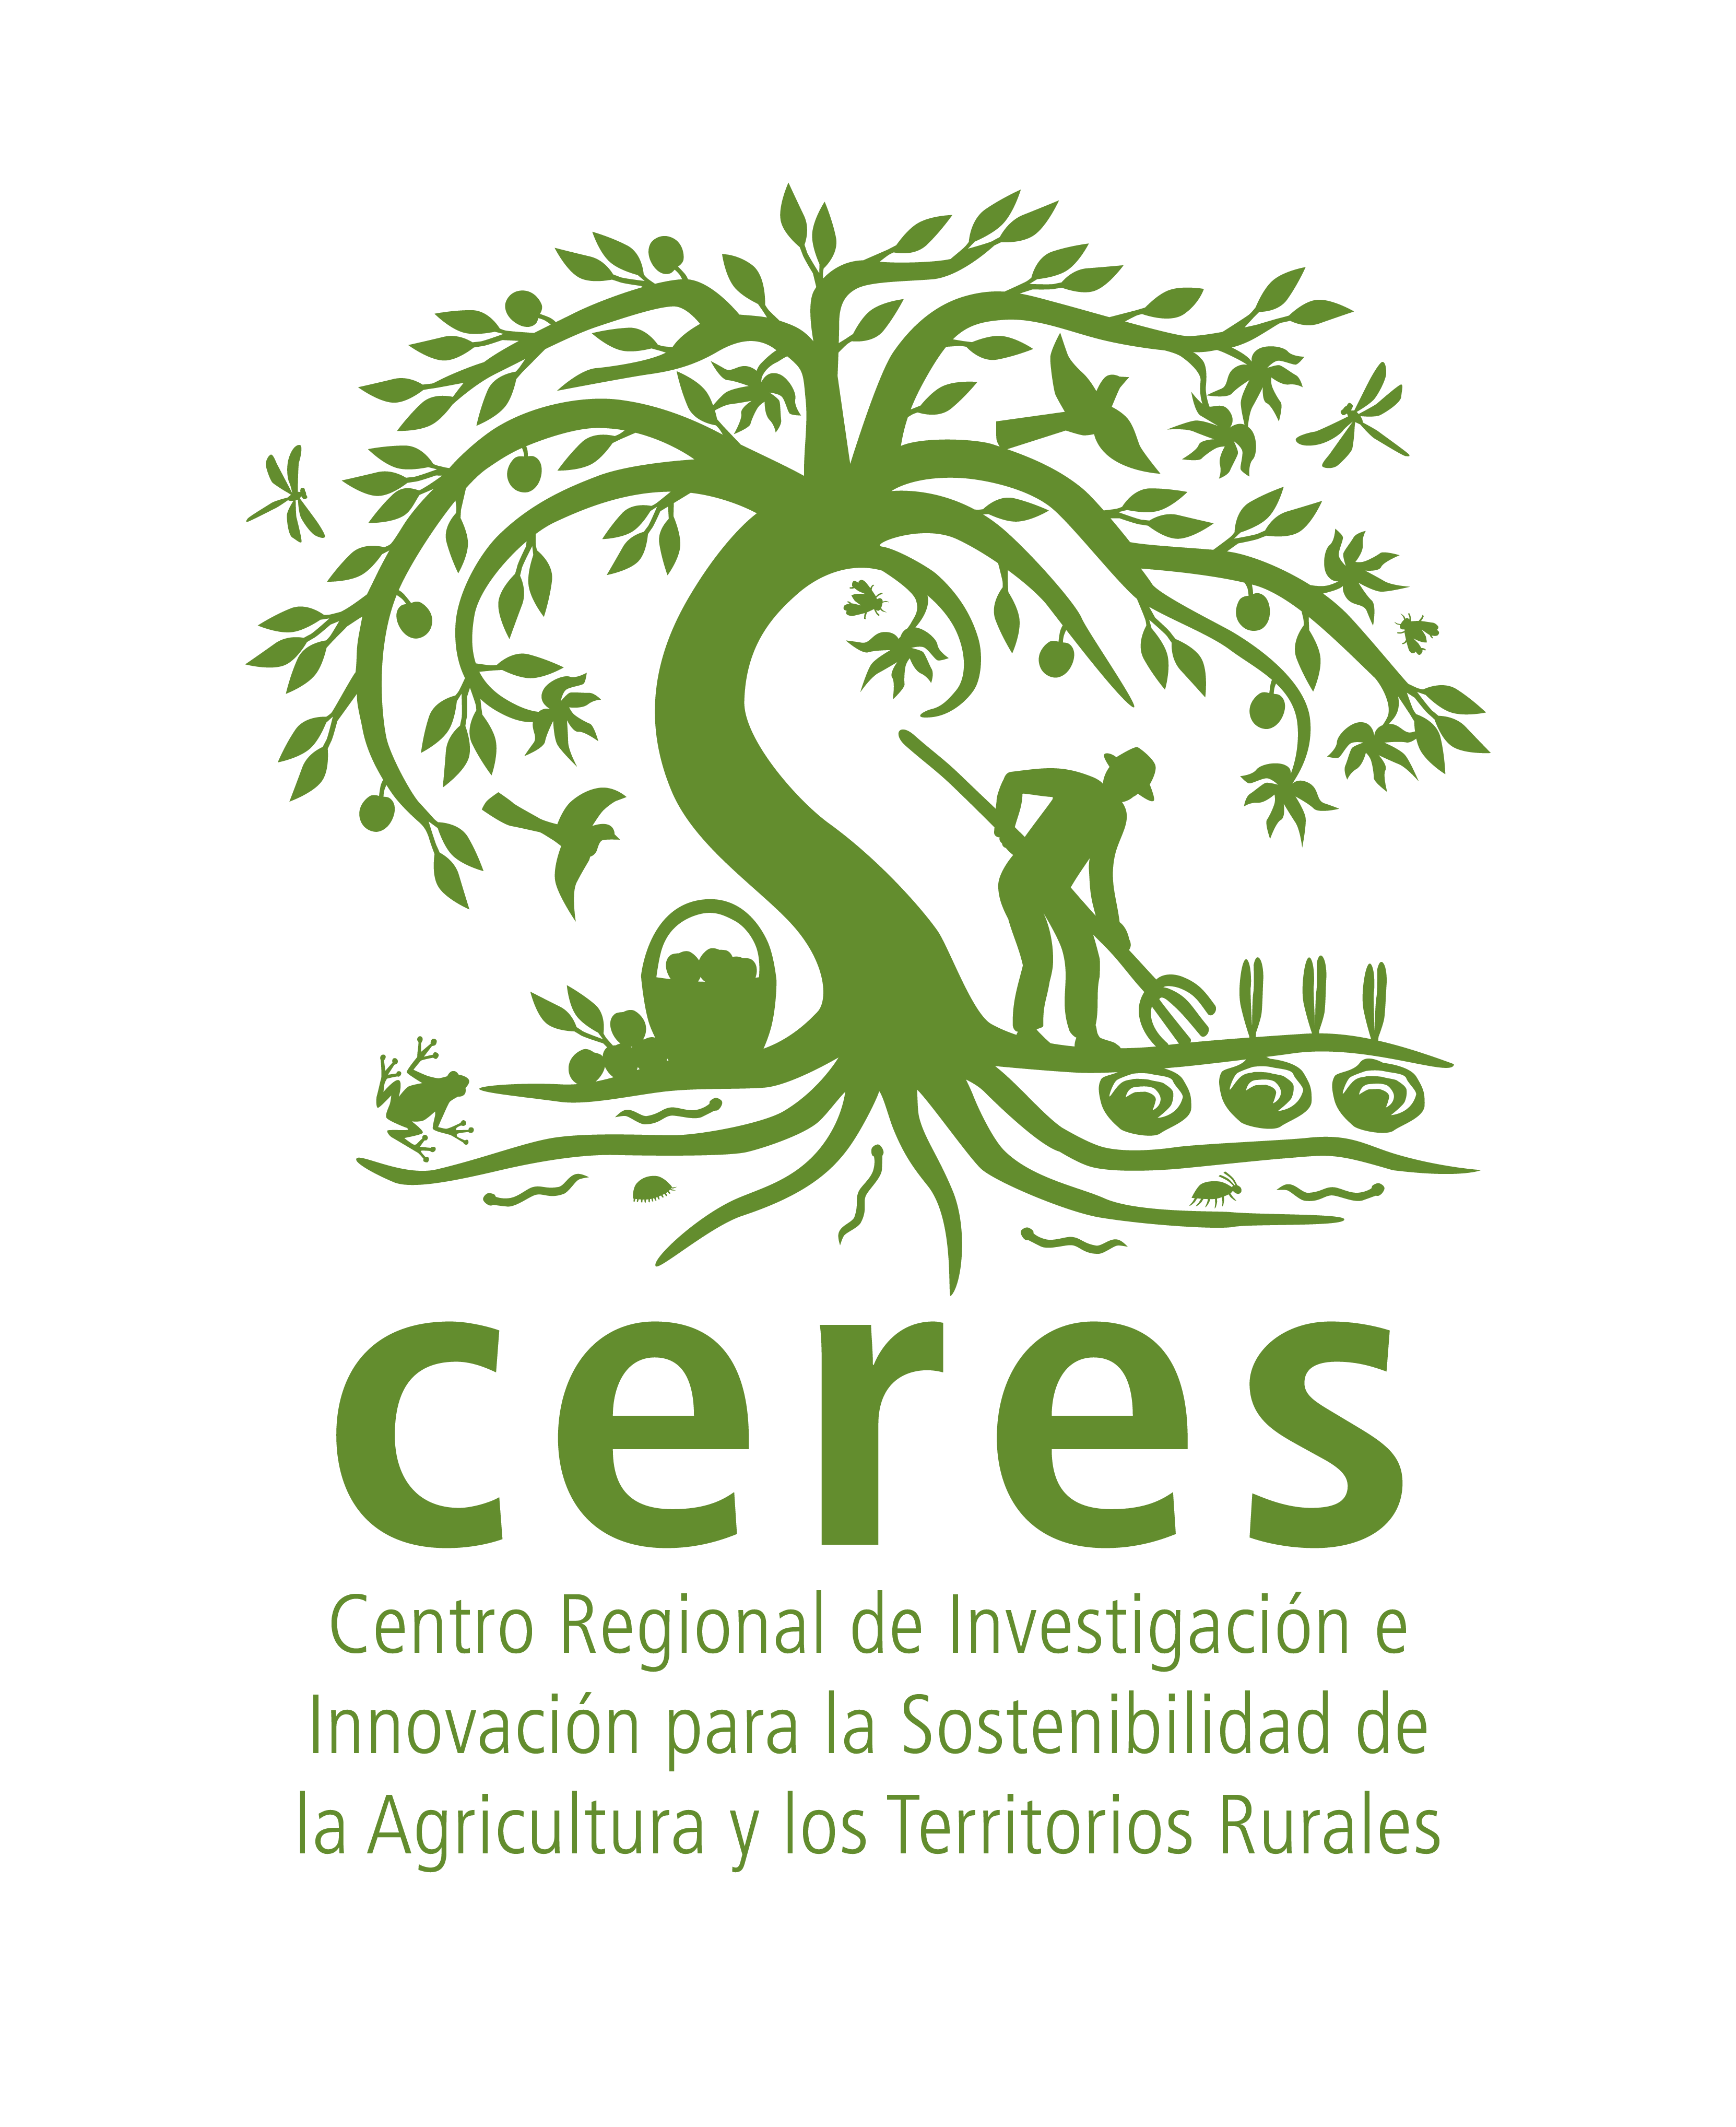 Centro Regional de Investigación e Innovación para la Sostenibilidad de la Agricultura y los Territorios Rurales